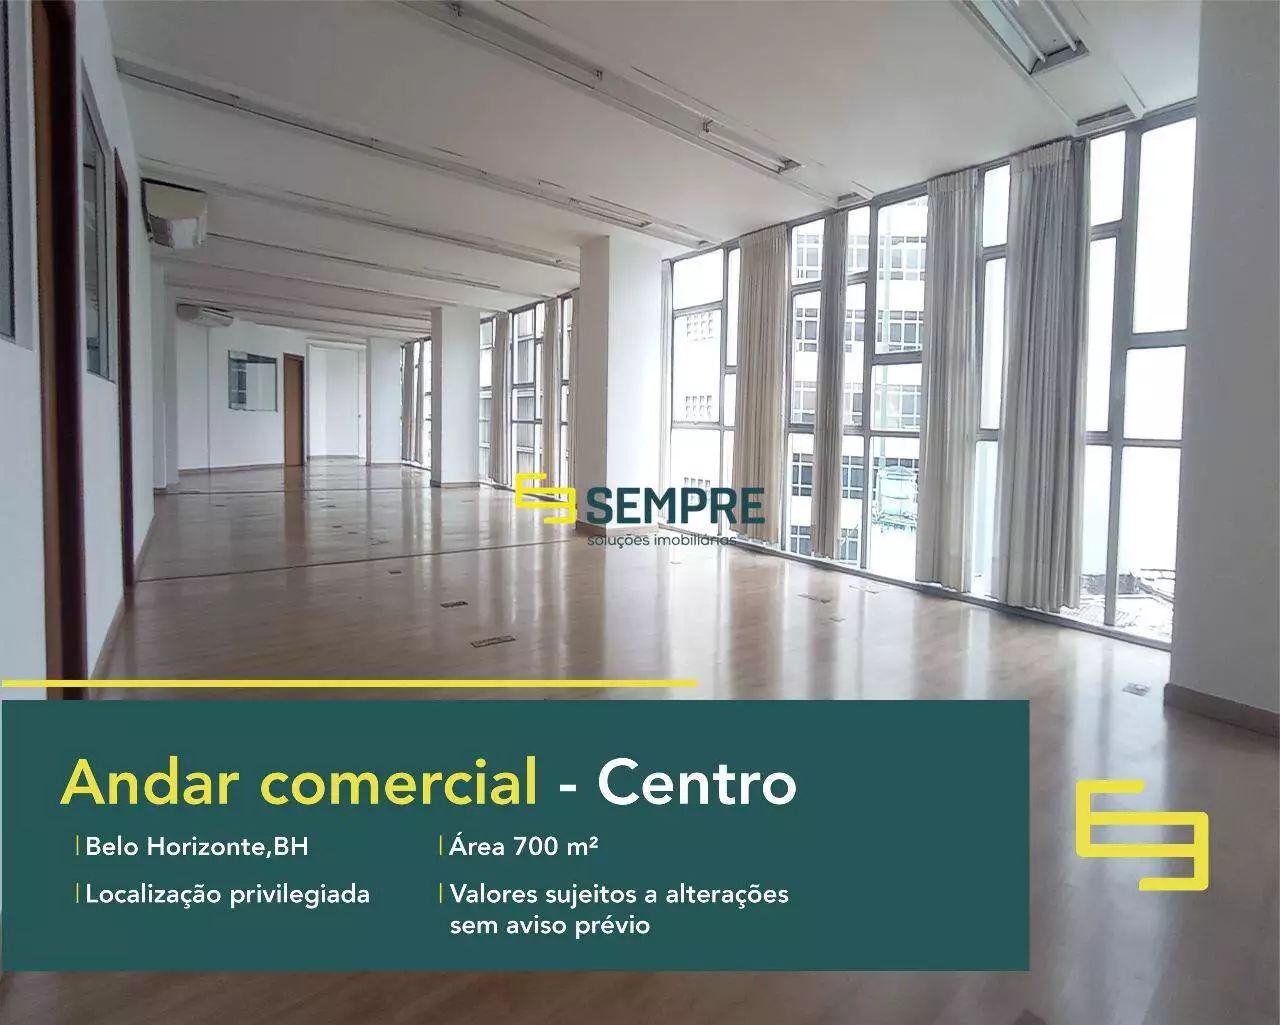 Andar comercial no Ed Vicente de Áraujo para alugar em BH. O estabelecimento comercial conta, sobretudo, com área de 700 m².